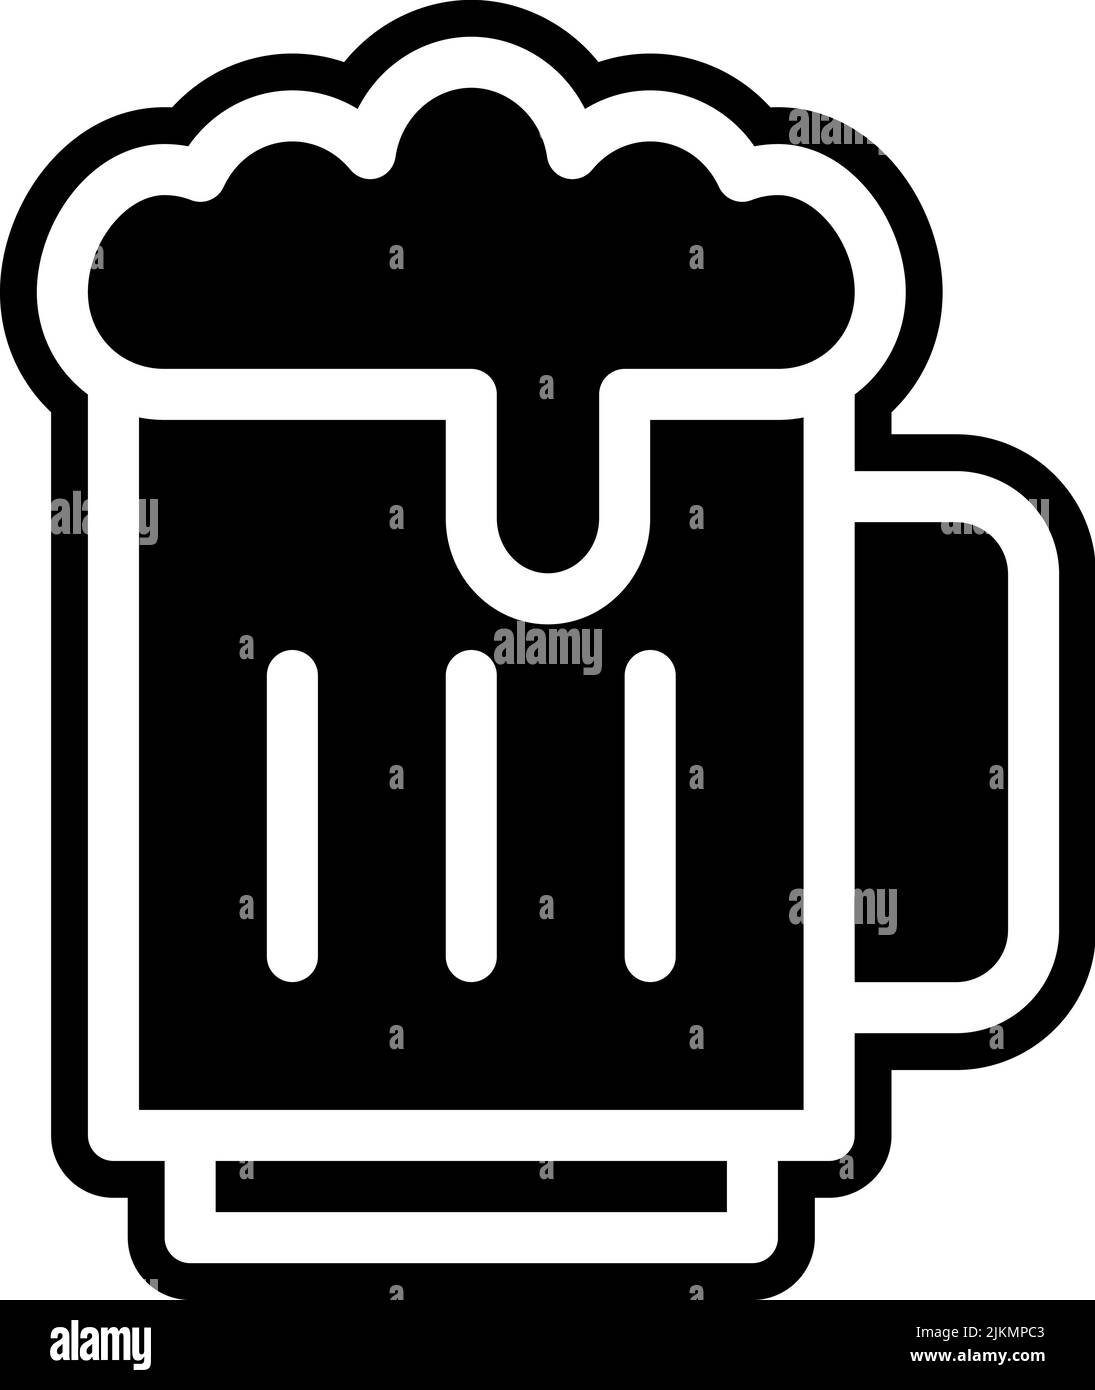 immagine vettoriale nera dell'icona della birra. Illustrazione Vettoriale